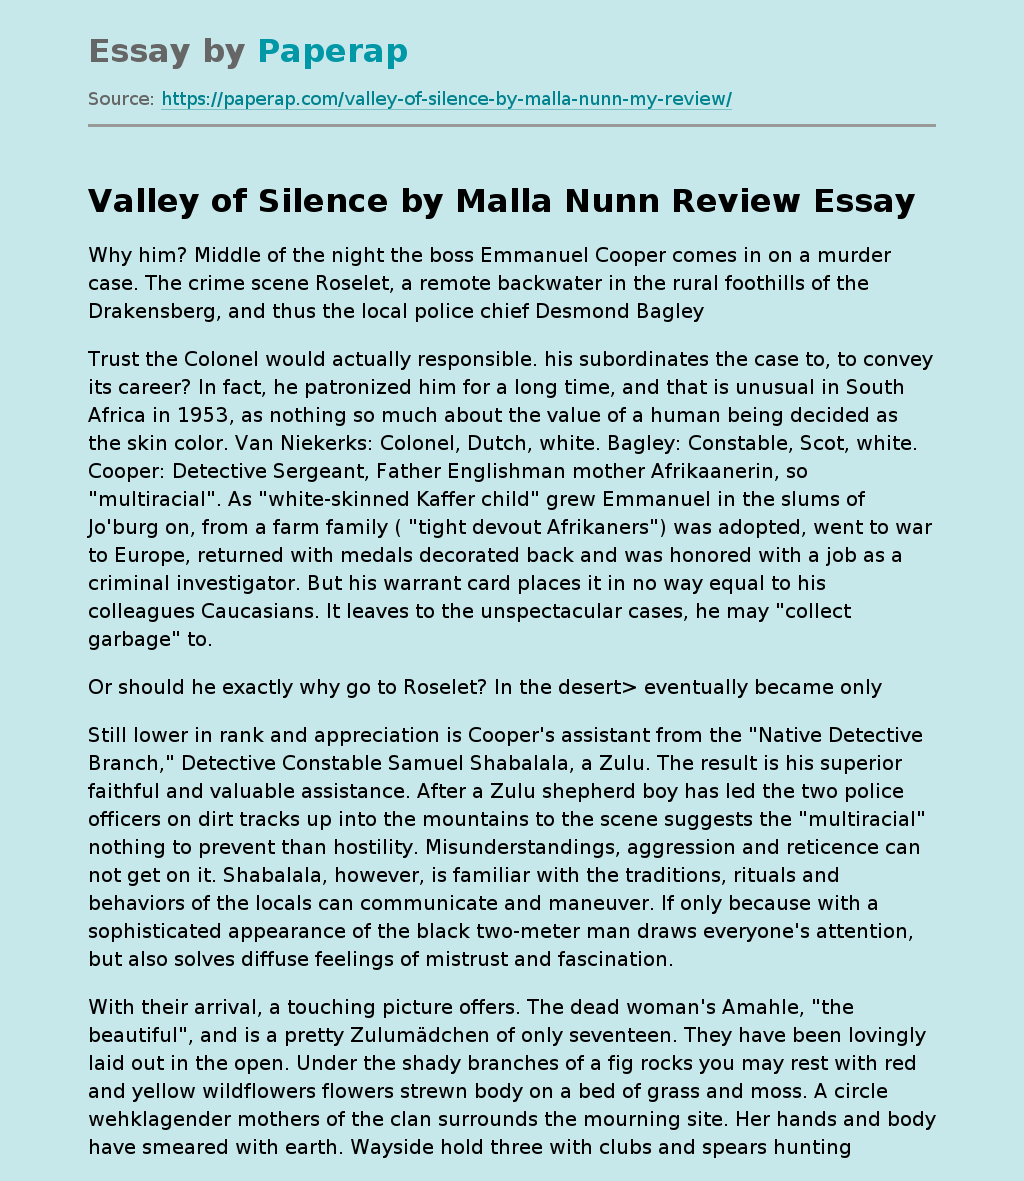 "Valley of Silence" by Malla Nunn